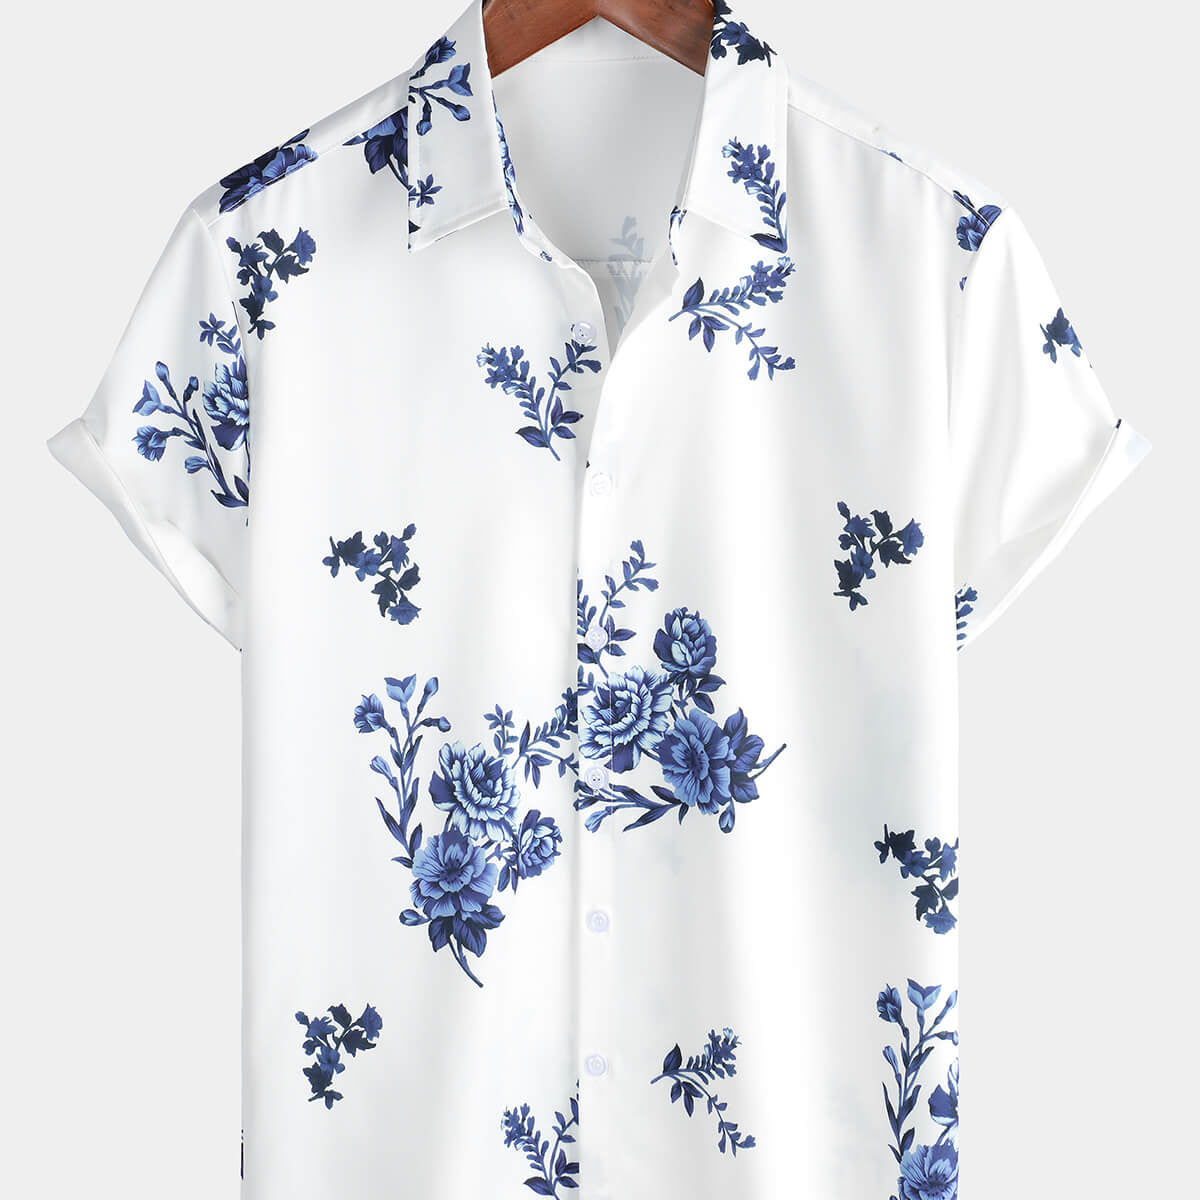 Men's Floral Summer Hawaiian Casual Short Sleeve Button Up Shirt